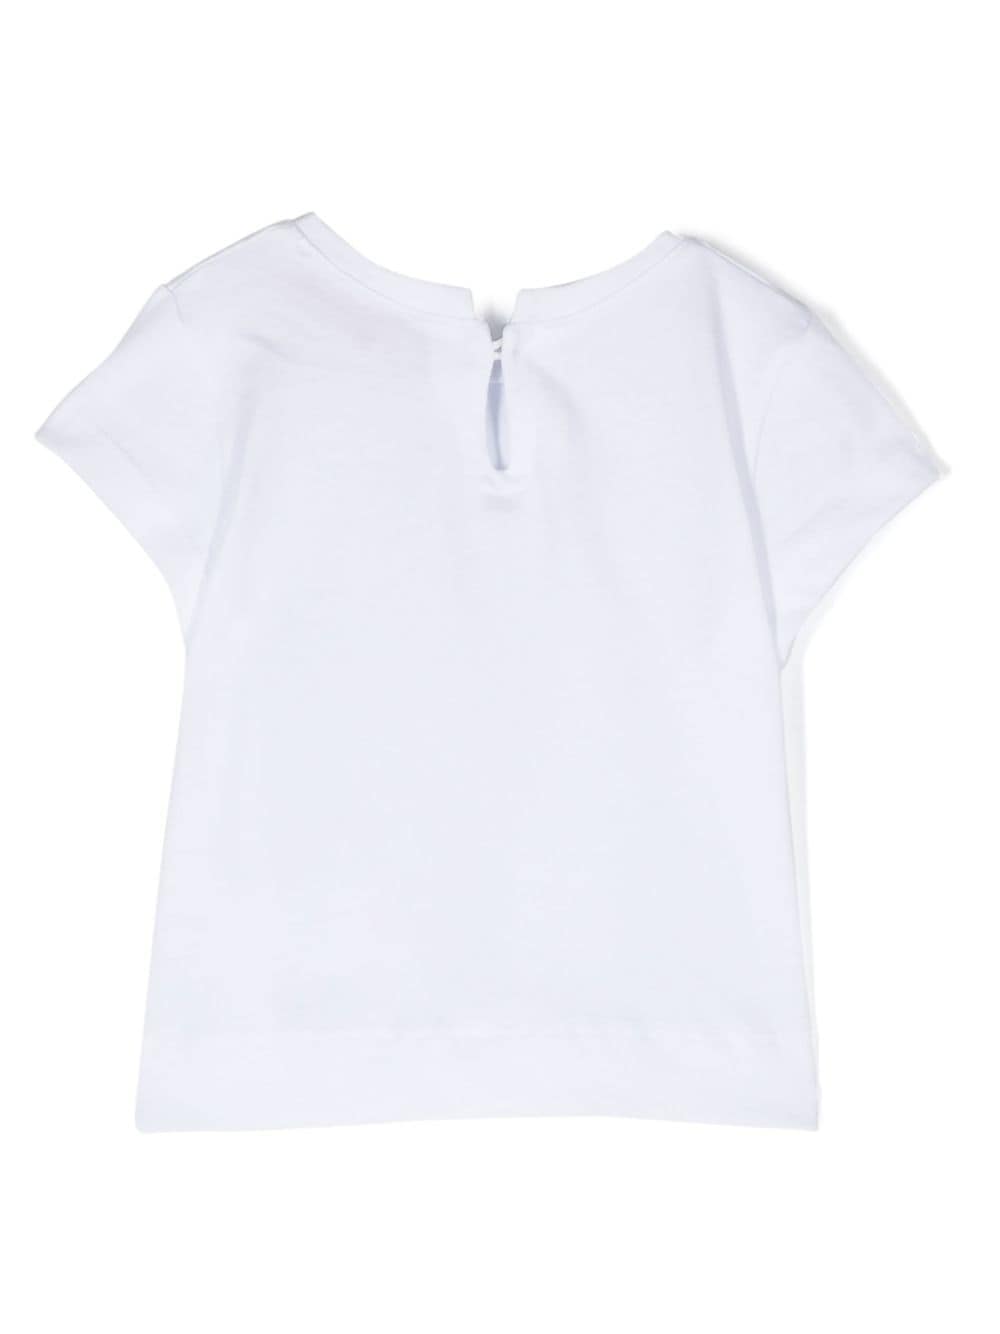 T-shirt neonata bianca